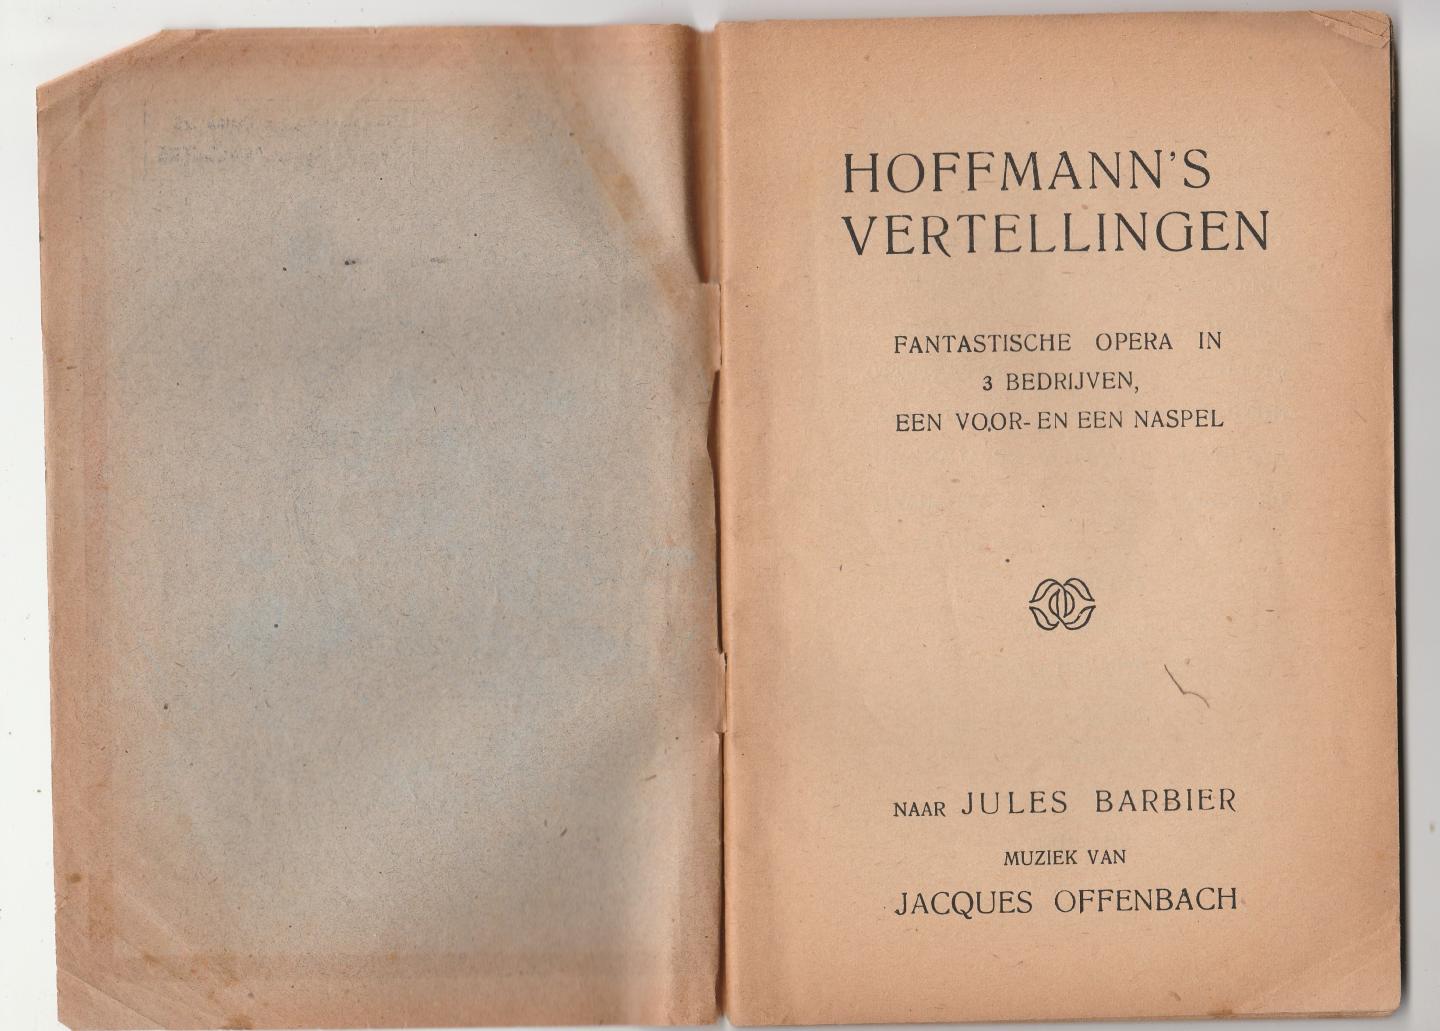 Barbier, Jules - Hoffmann's vertellingen, fantastische opera in 3 bedrijven een voor- en een naspel